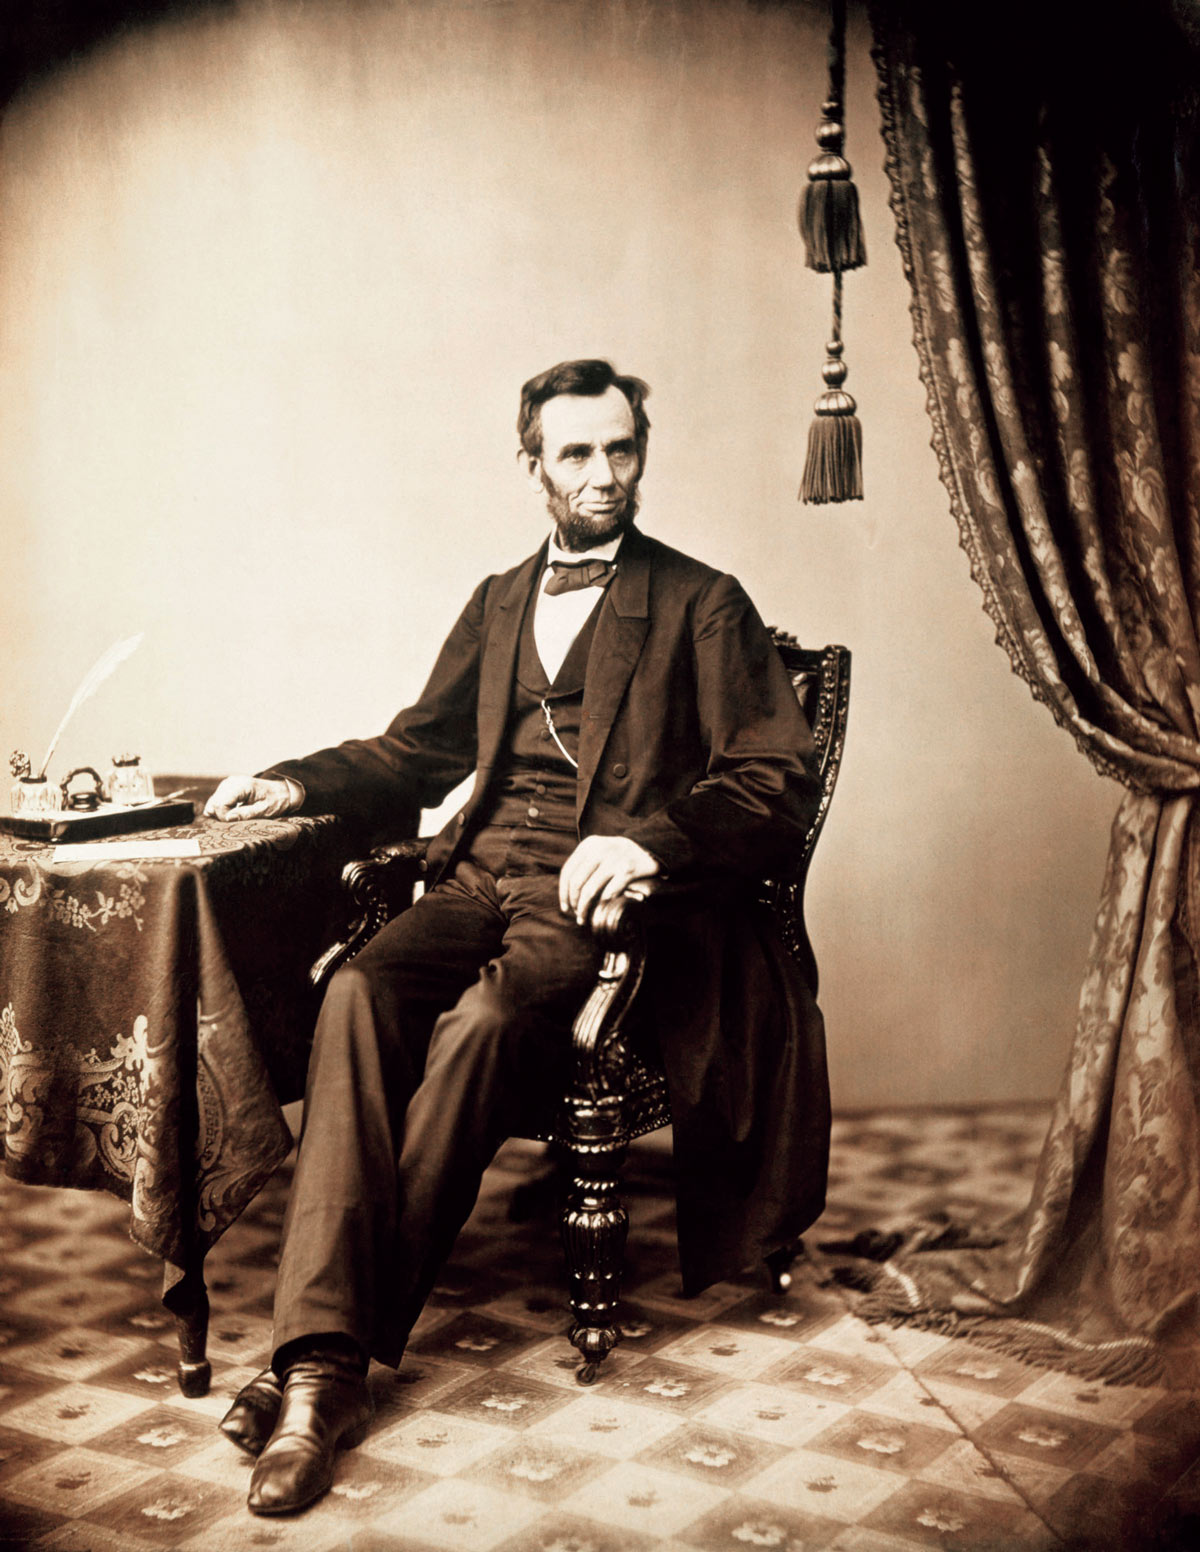 【エイブラハム・リンカーン】アメリカ史に輝く偉大な大統領の意外な影響とは!?